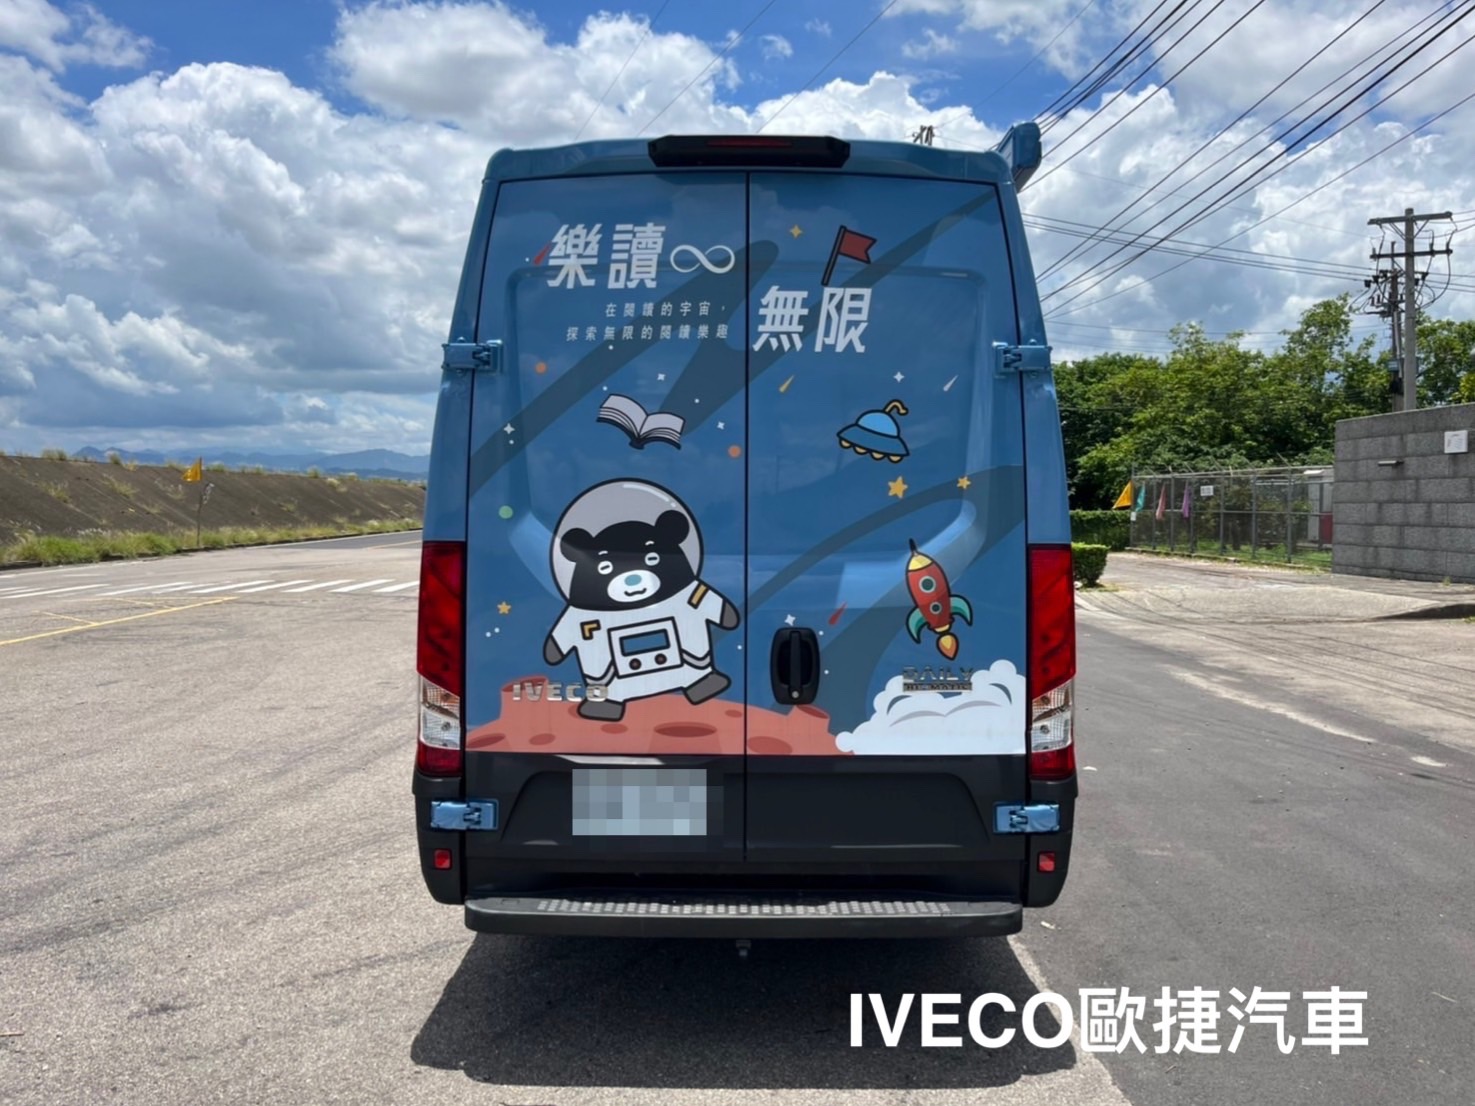 IVECO 行動書車 全台灣跑透透